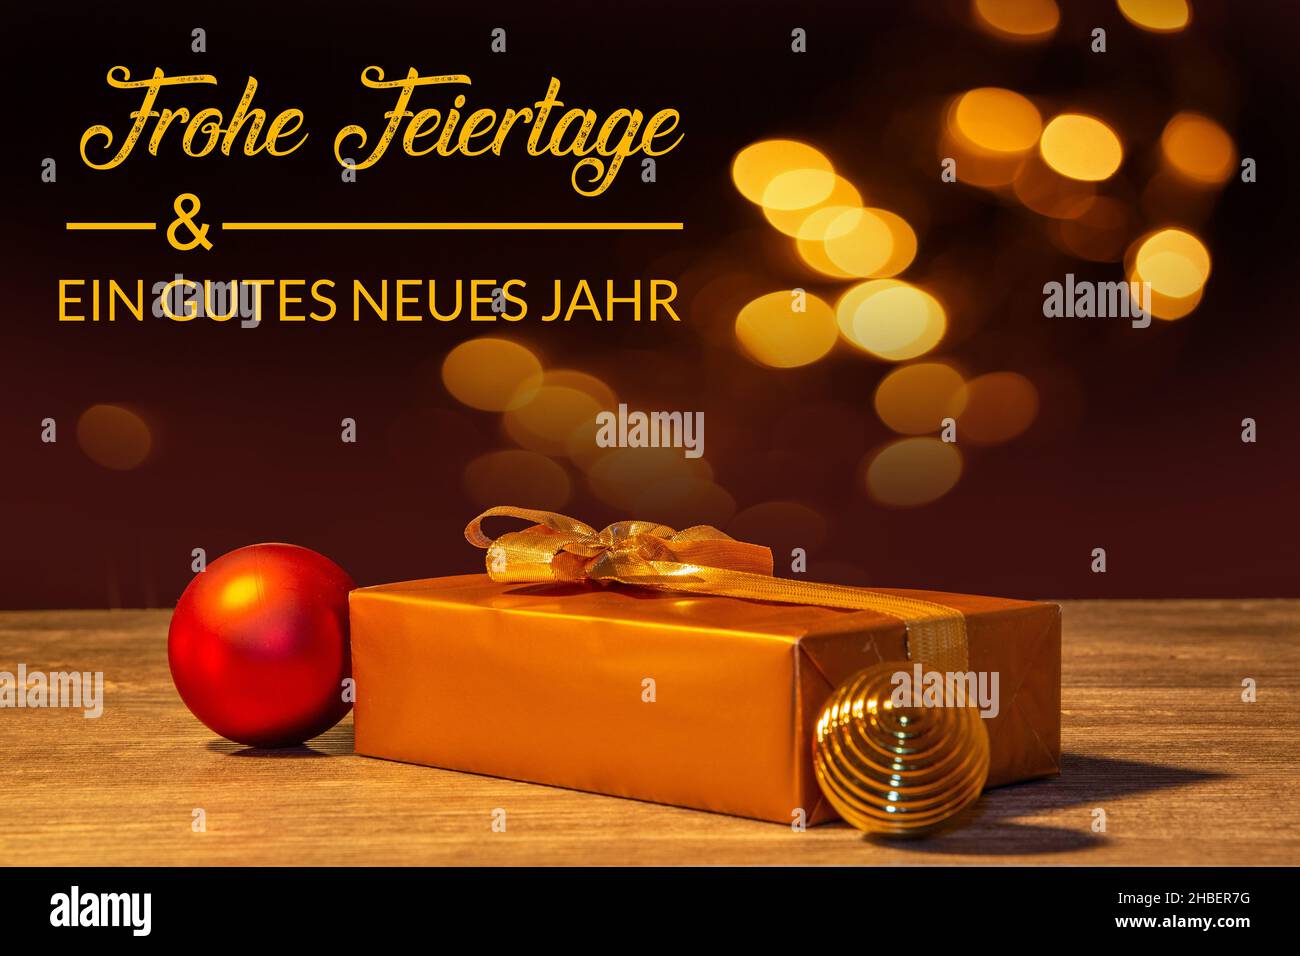 Mesa de regalo de Navidad con saludos de Navidad y Año Nuevo en alemán Foto de stock